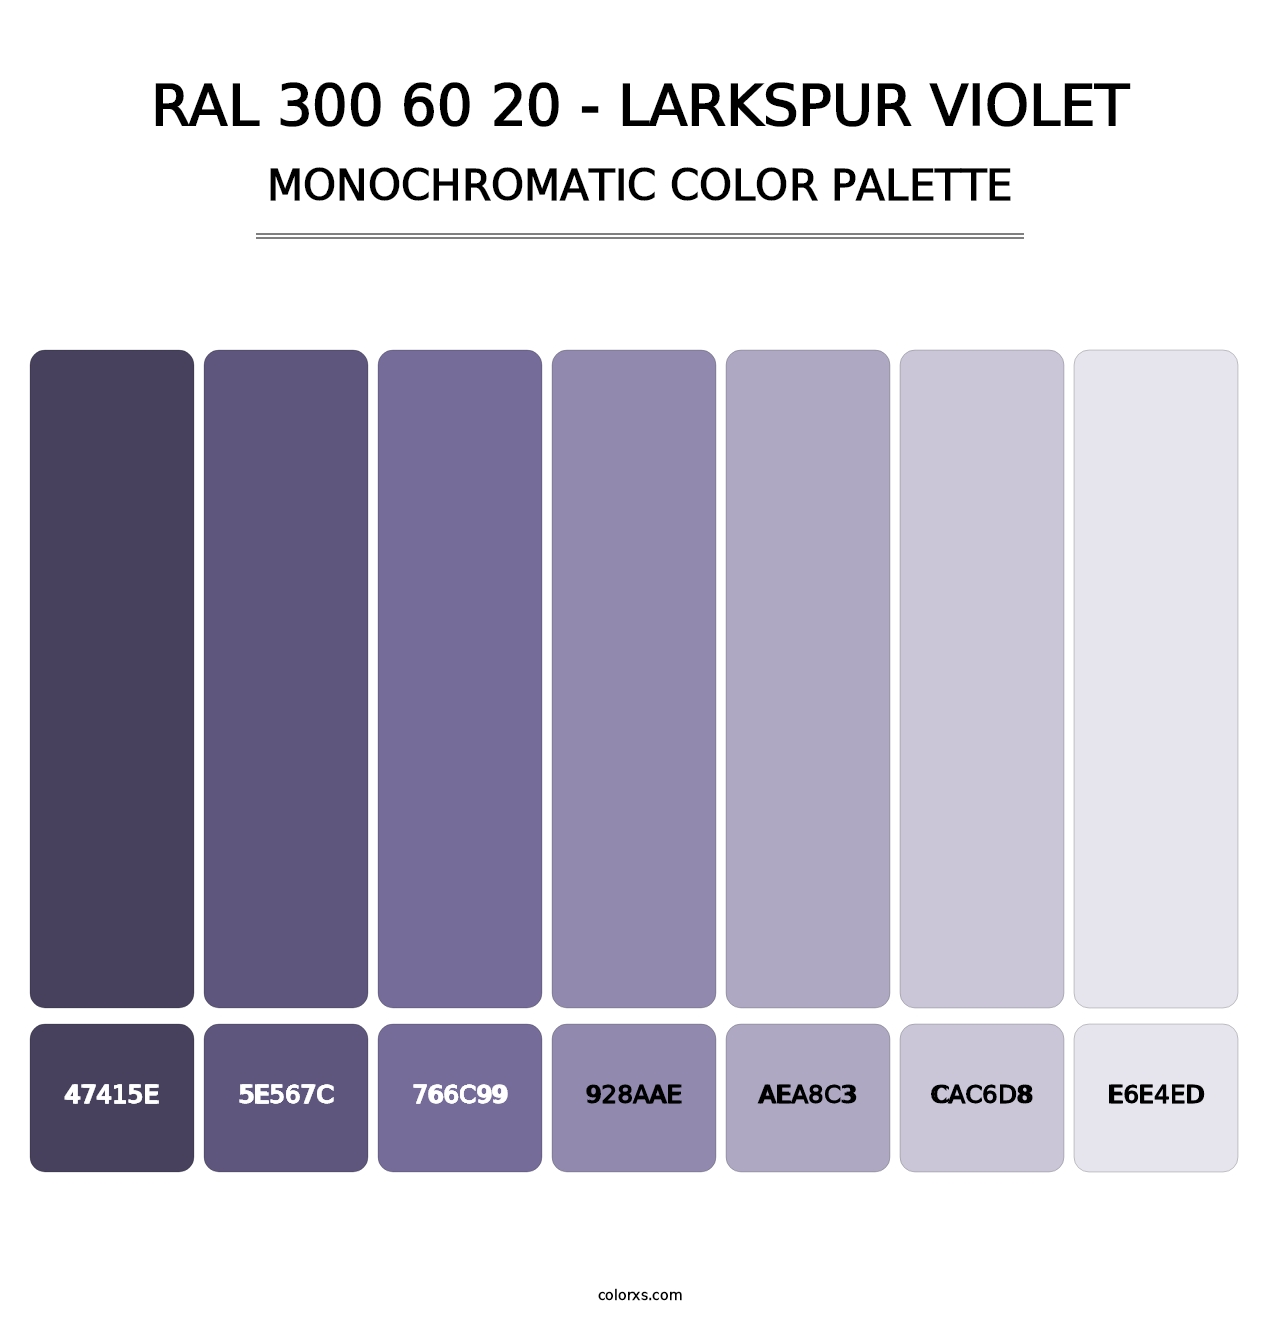 RAL 300 60 20 - Larkspur Violet - Monochromatic Color Palette